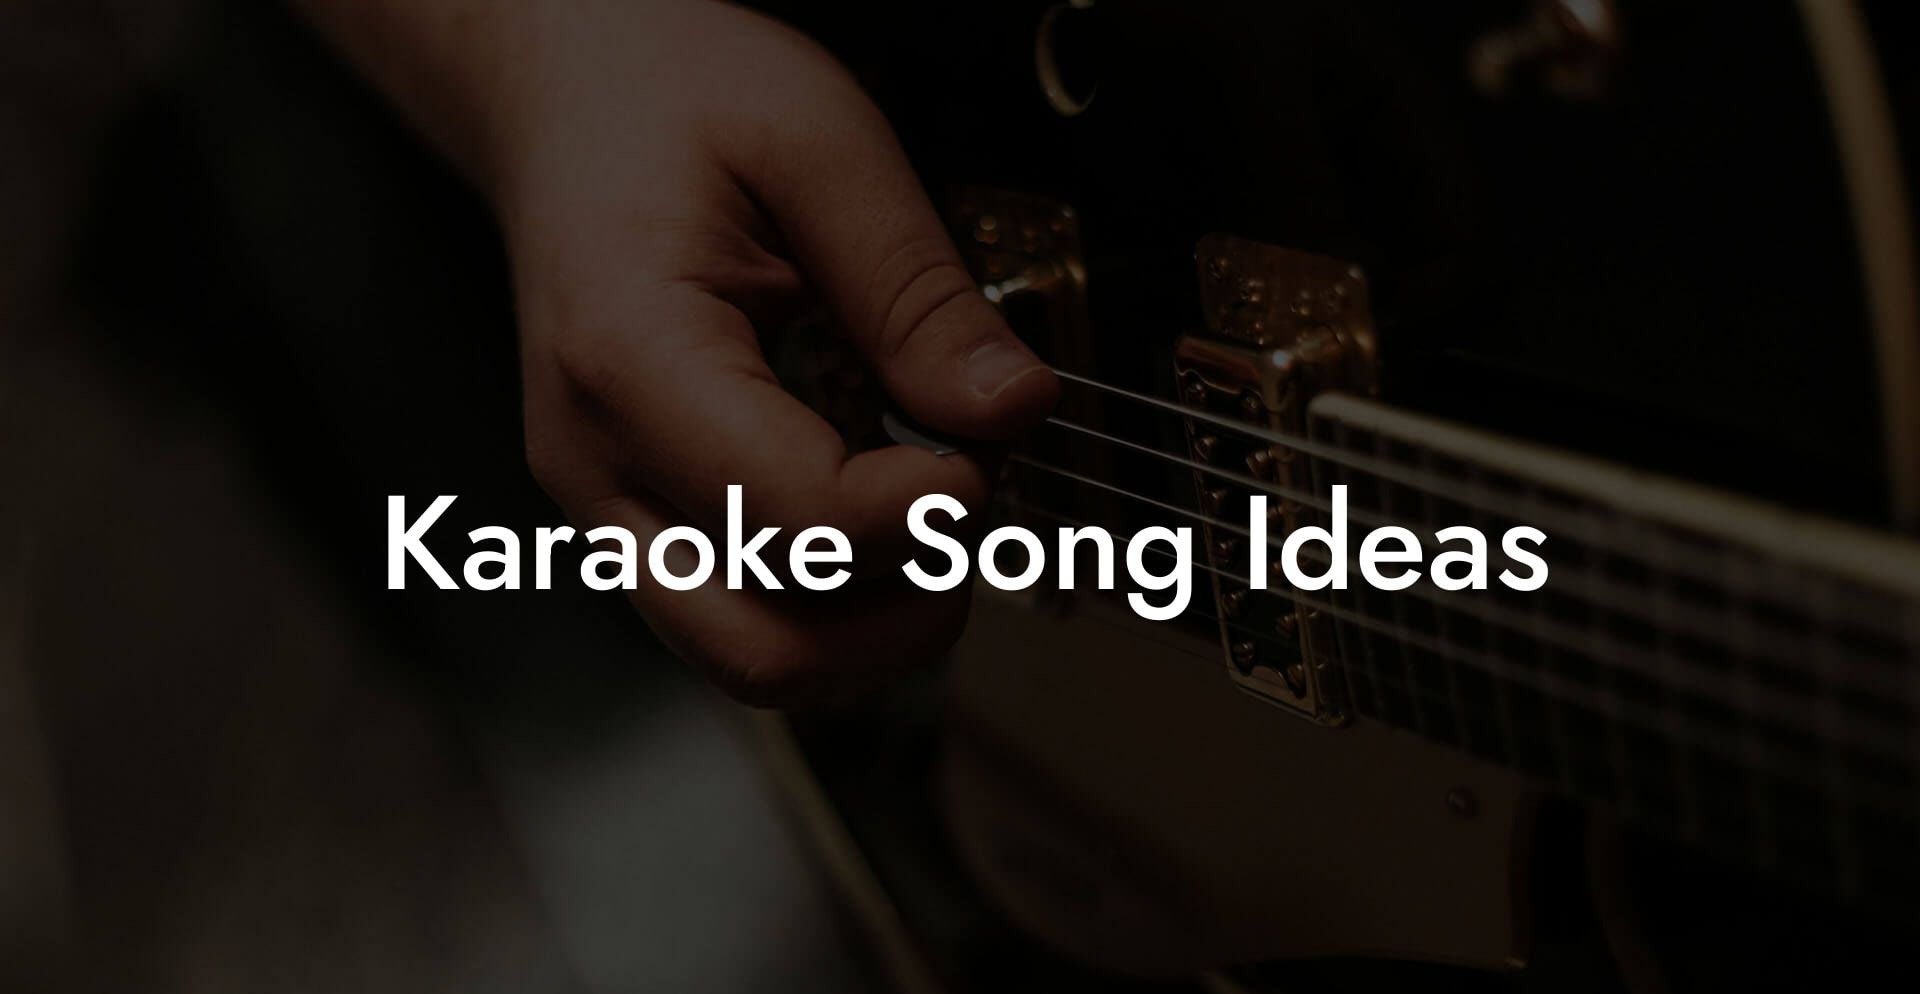 karaoke song ideas lyric assistant